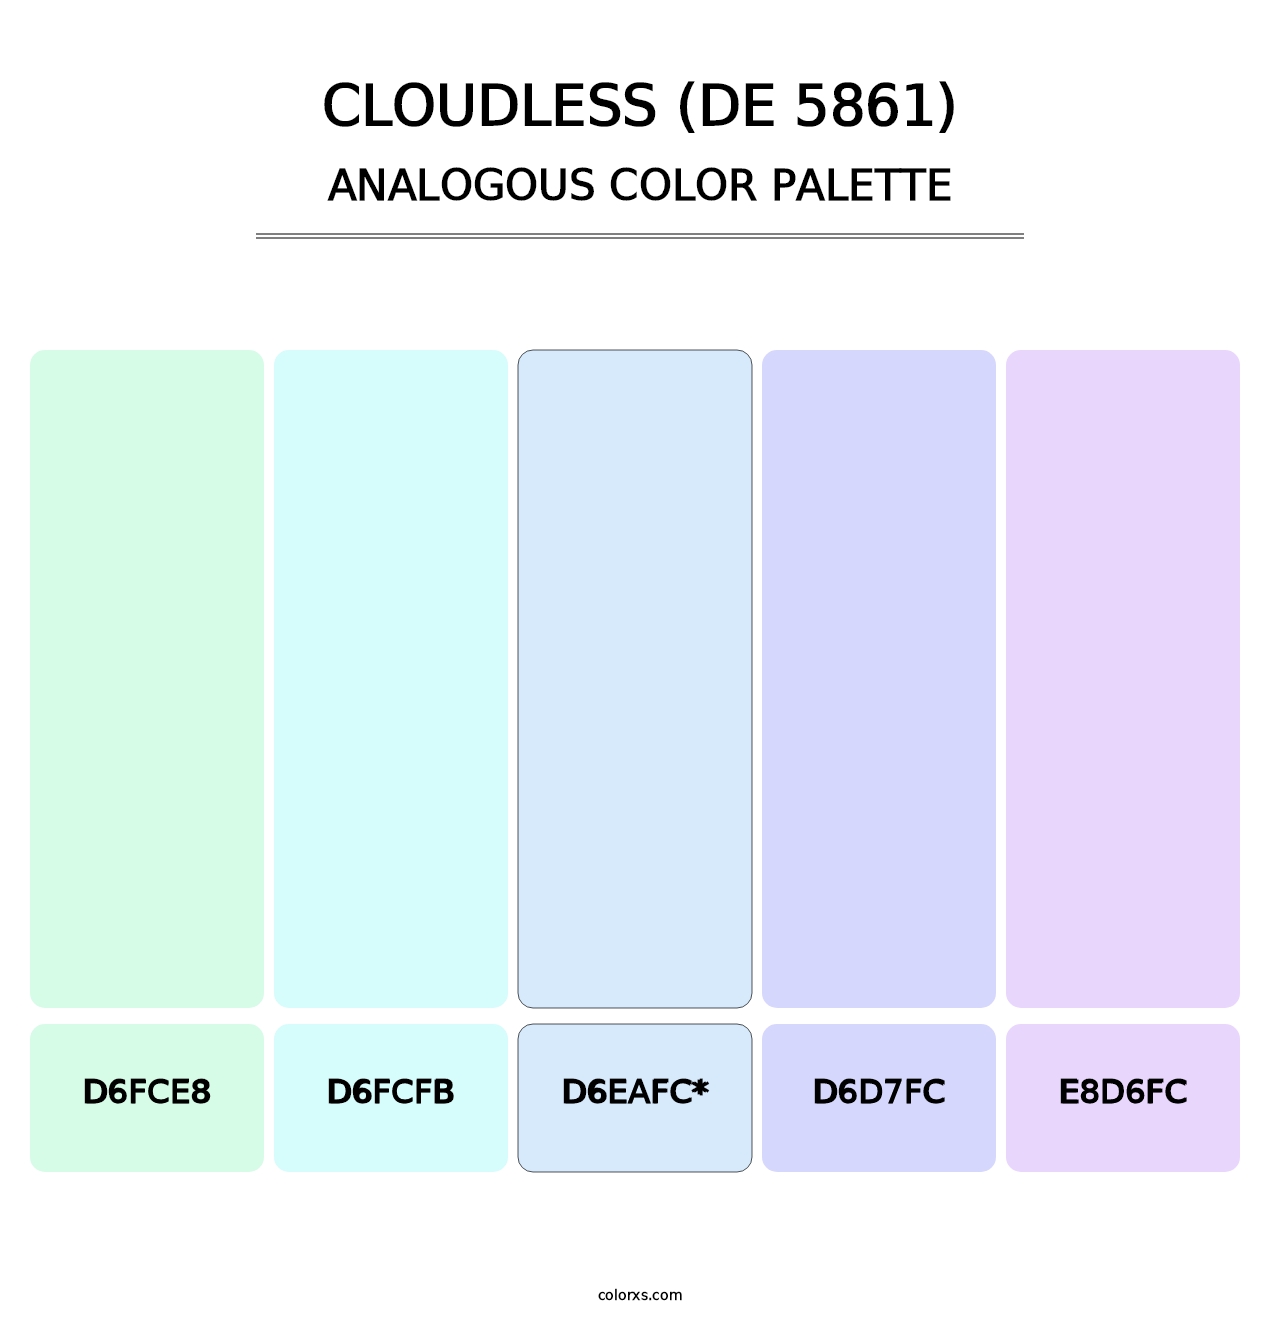 Cloudless (DE 5861) - Analogous Color Palette